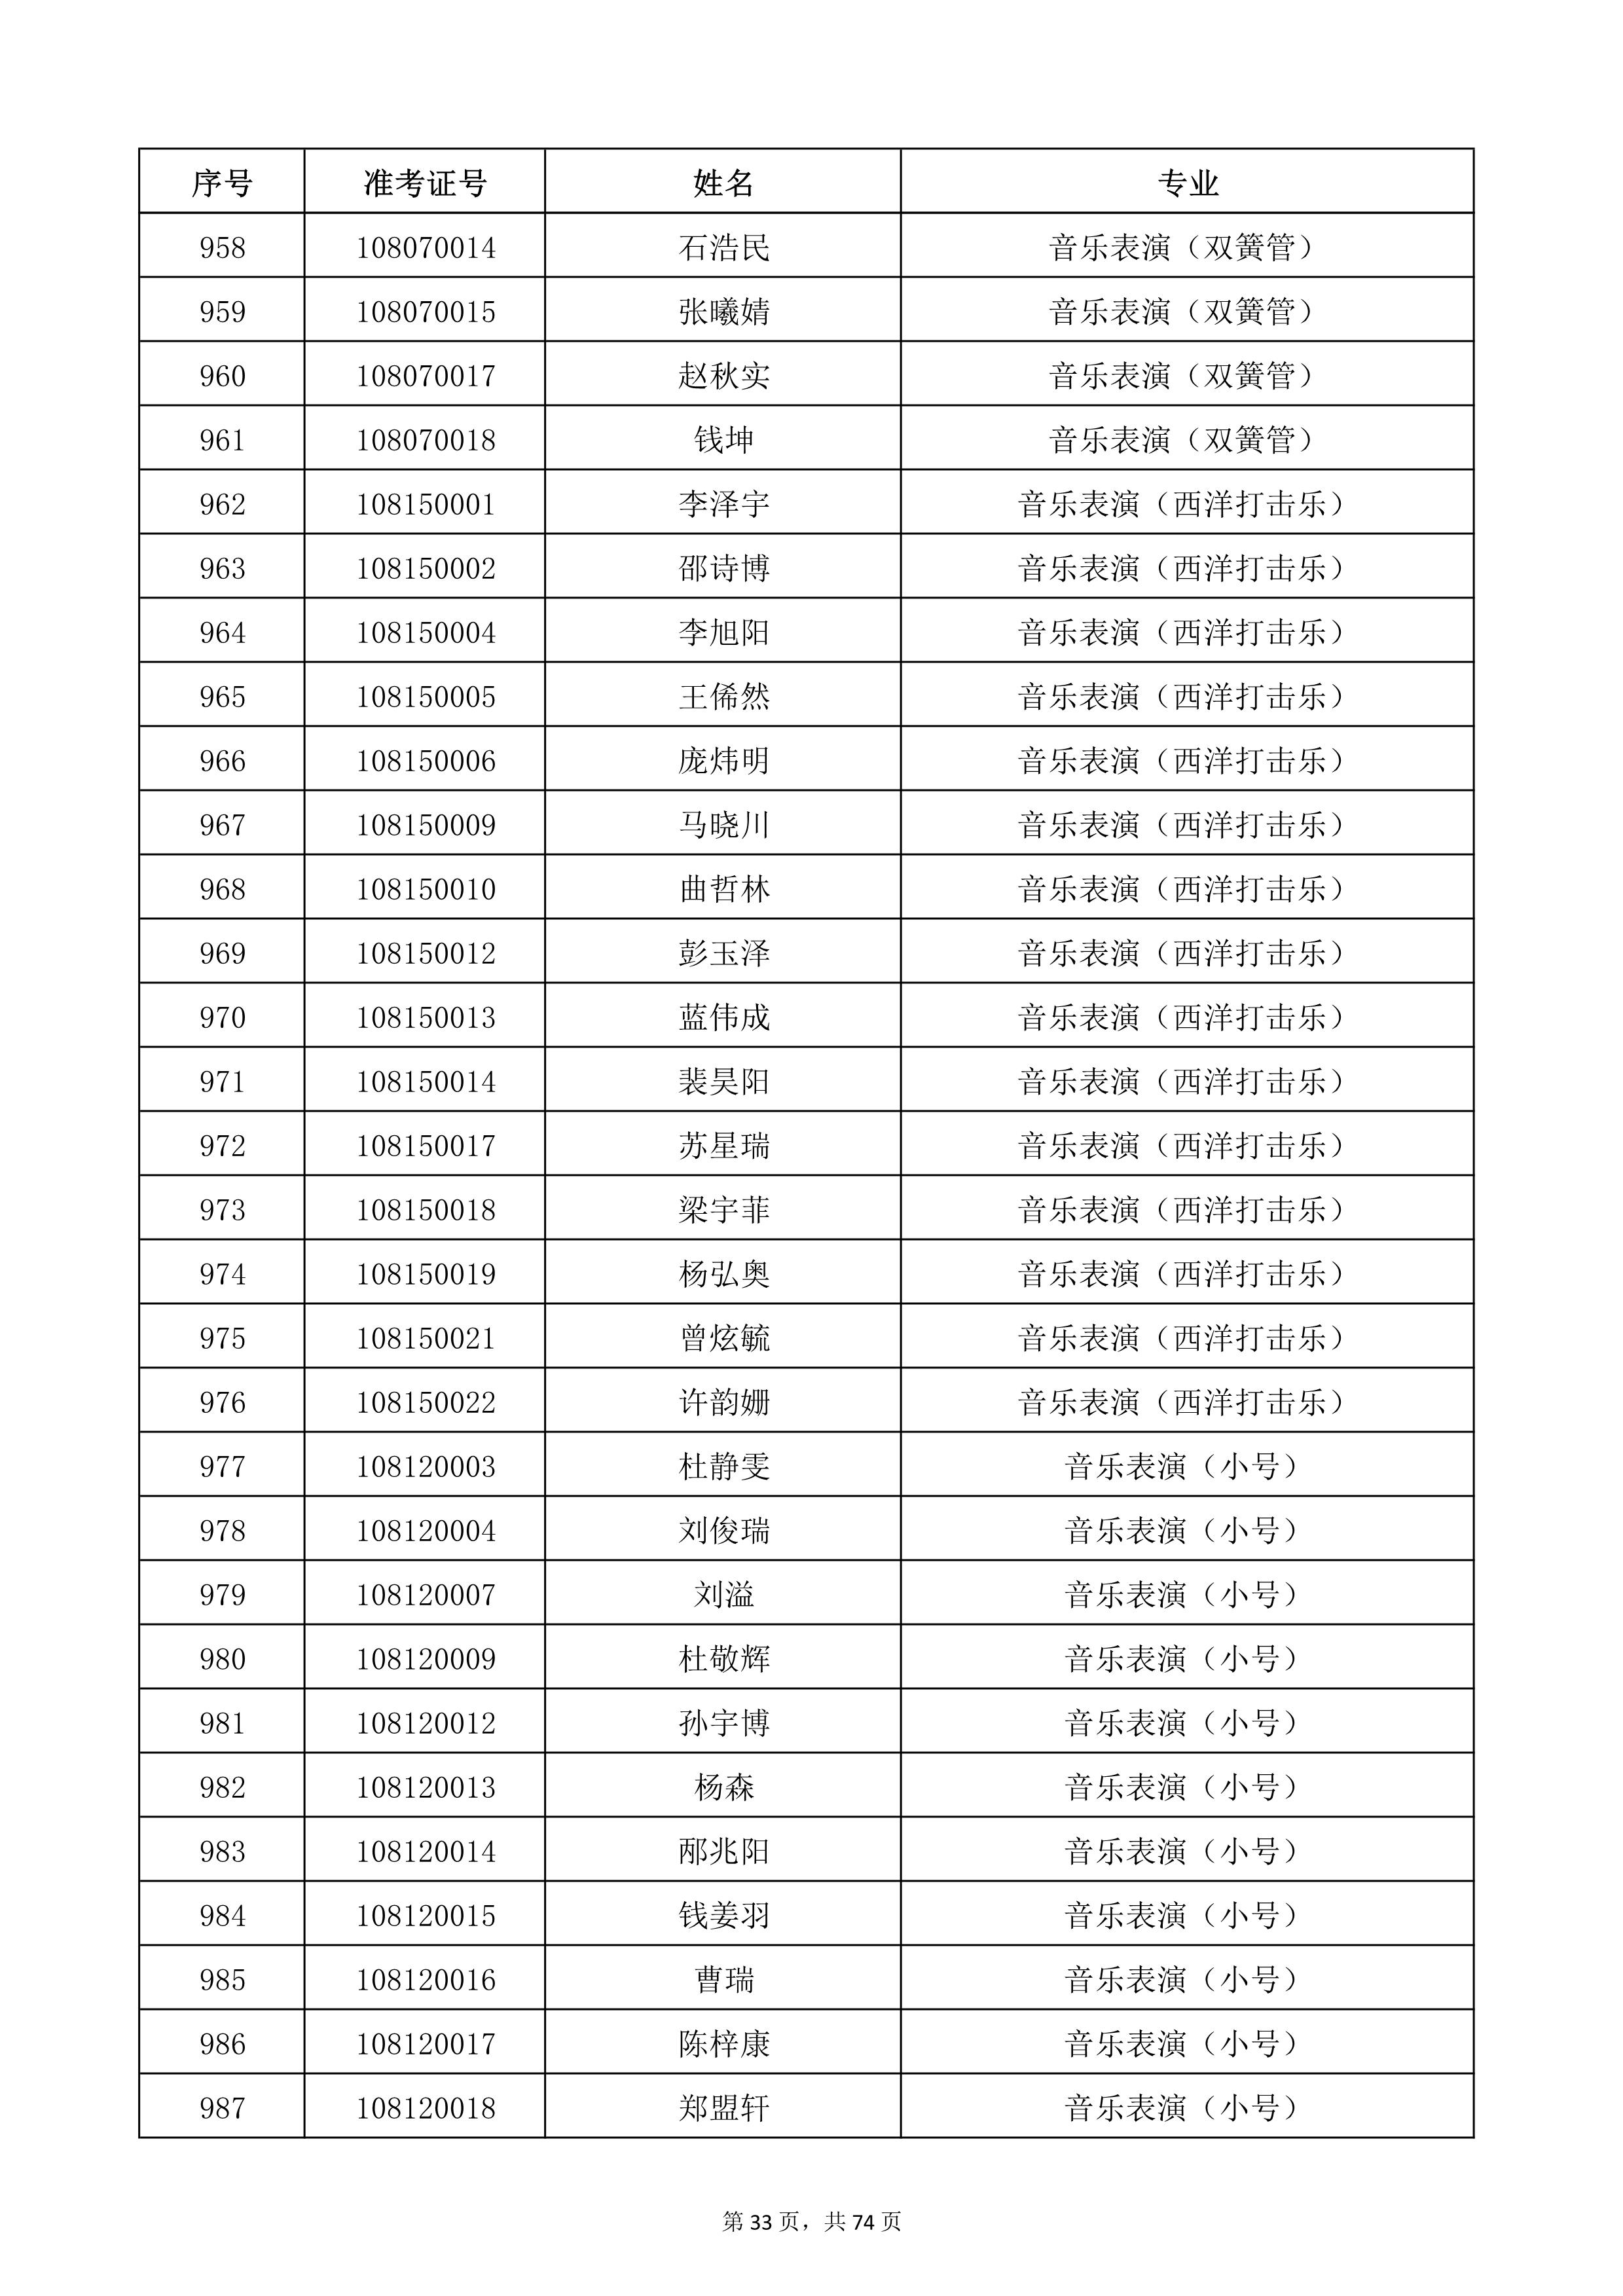 天津音乐学院2022年本科招生考试复试名单_33.jpg